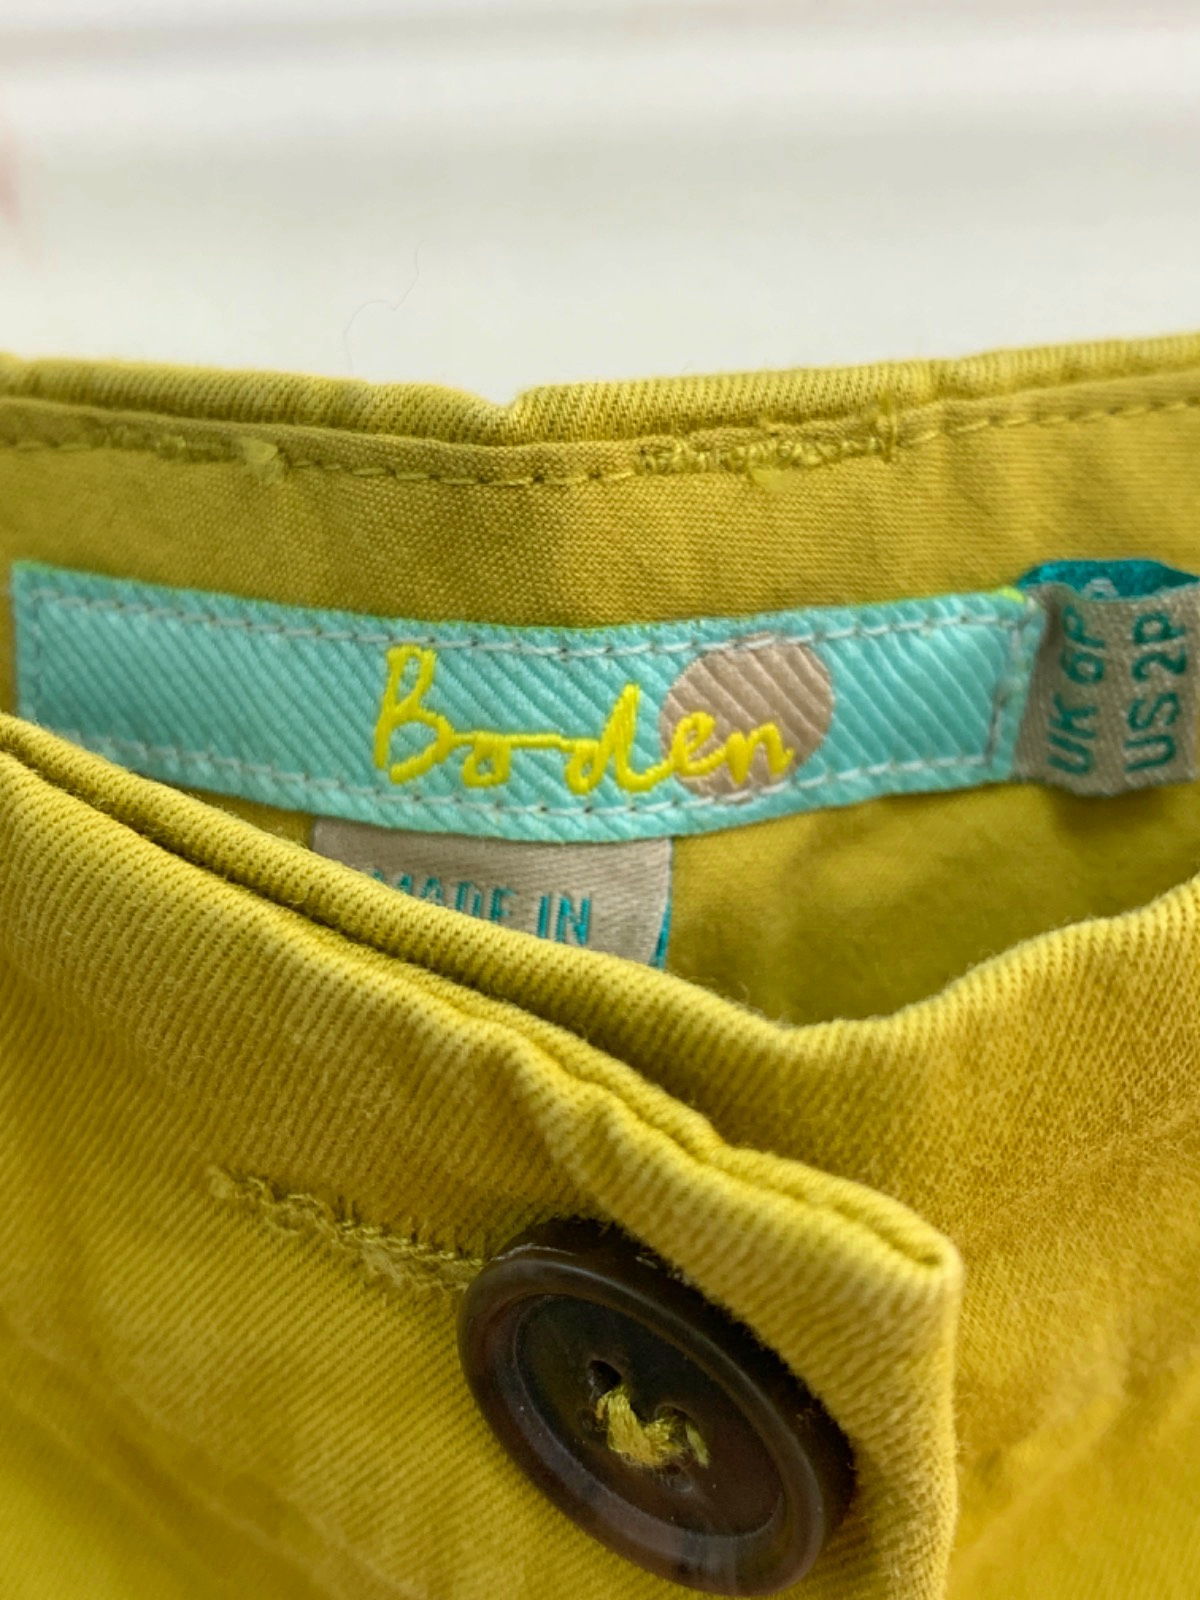 Boden Yellow Chino Trousers Size UK 6P